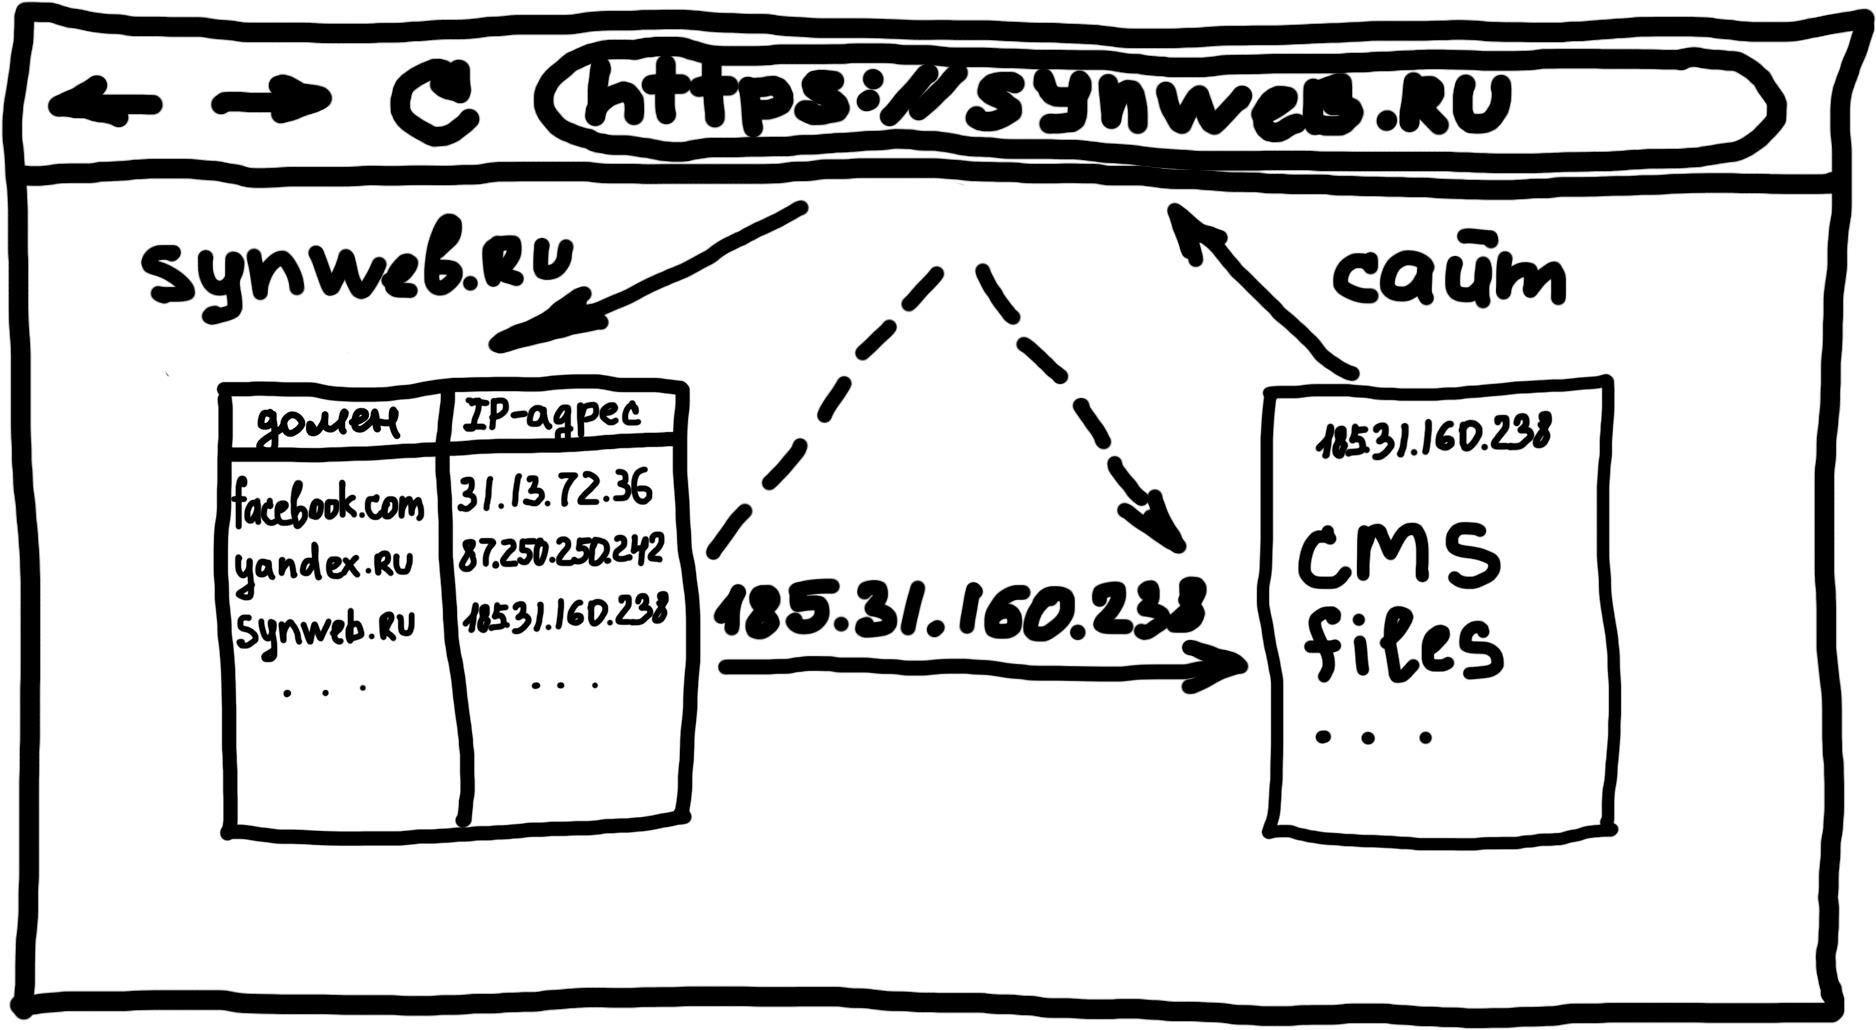 Общая схема работы сайта, хостинга и домена